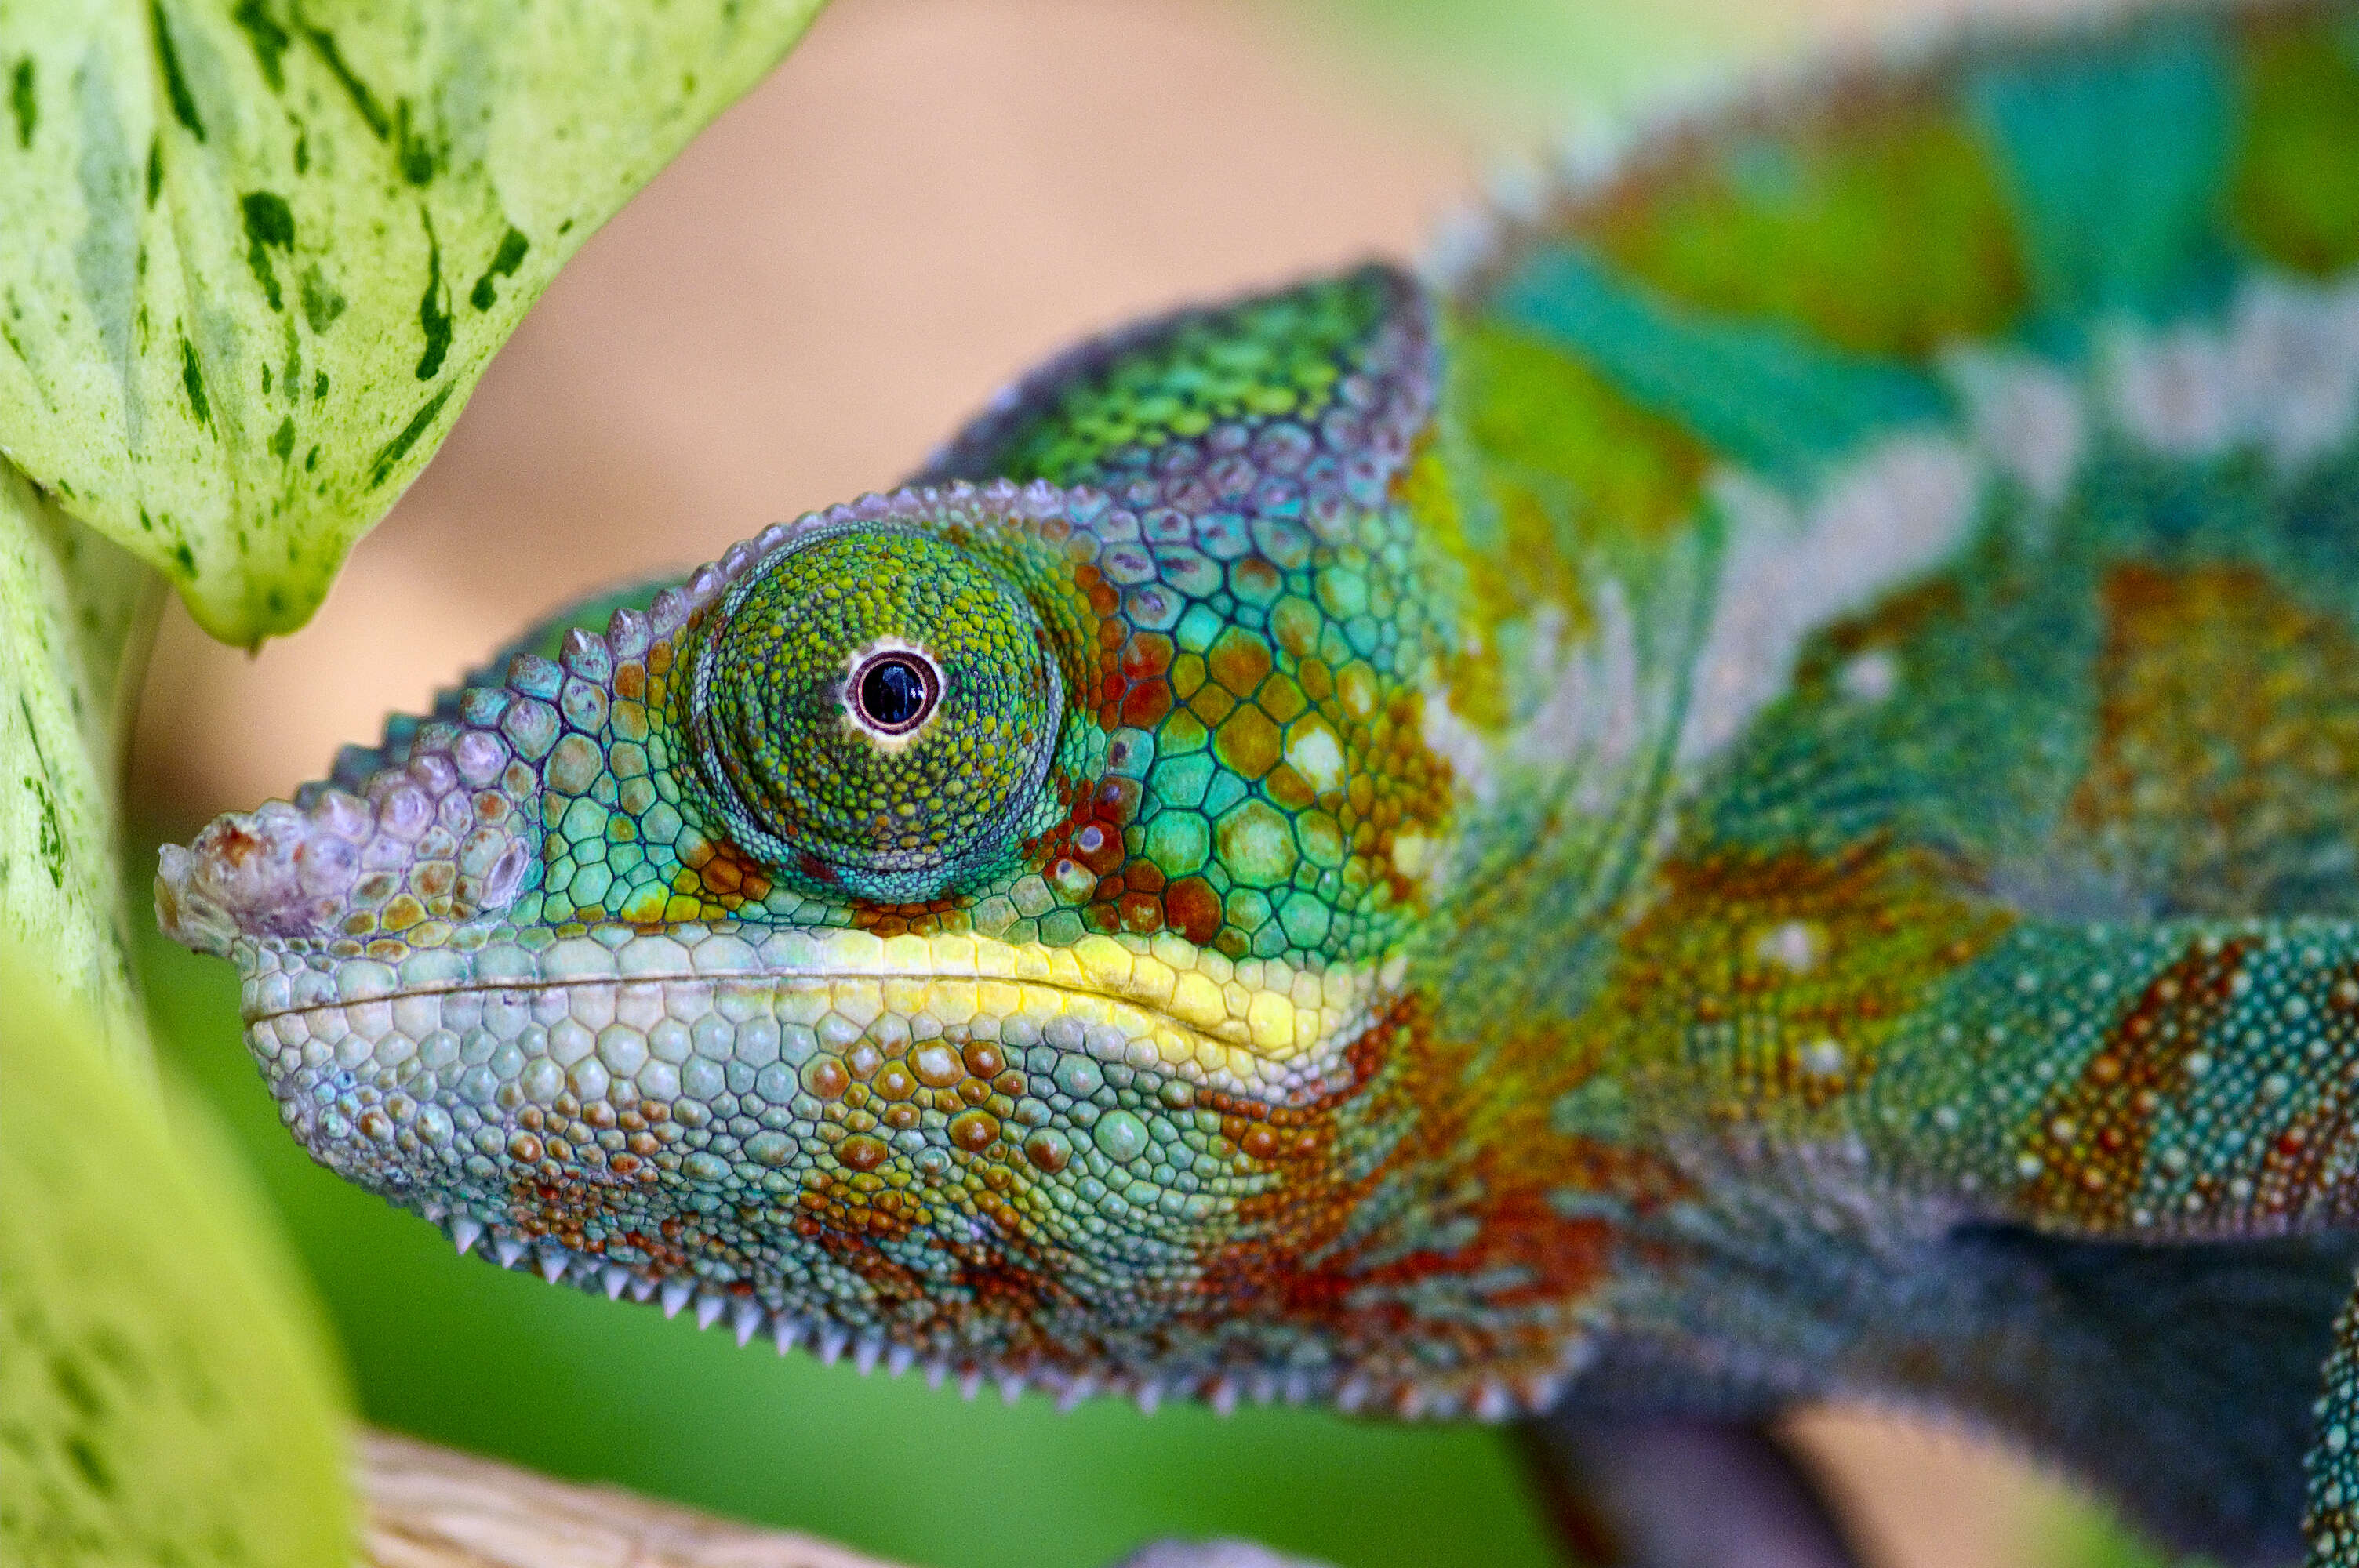 Image of Malagasy chameleons